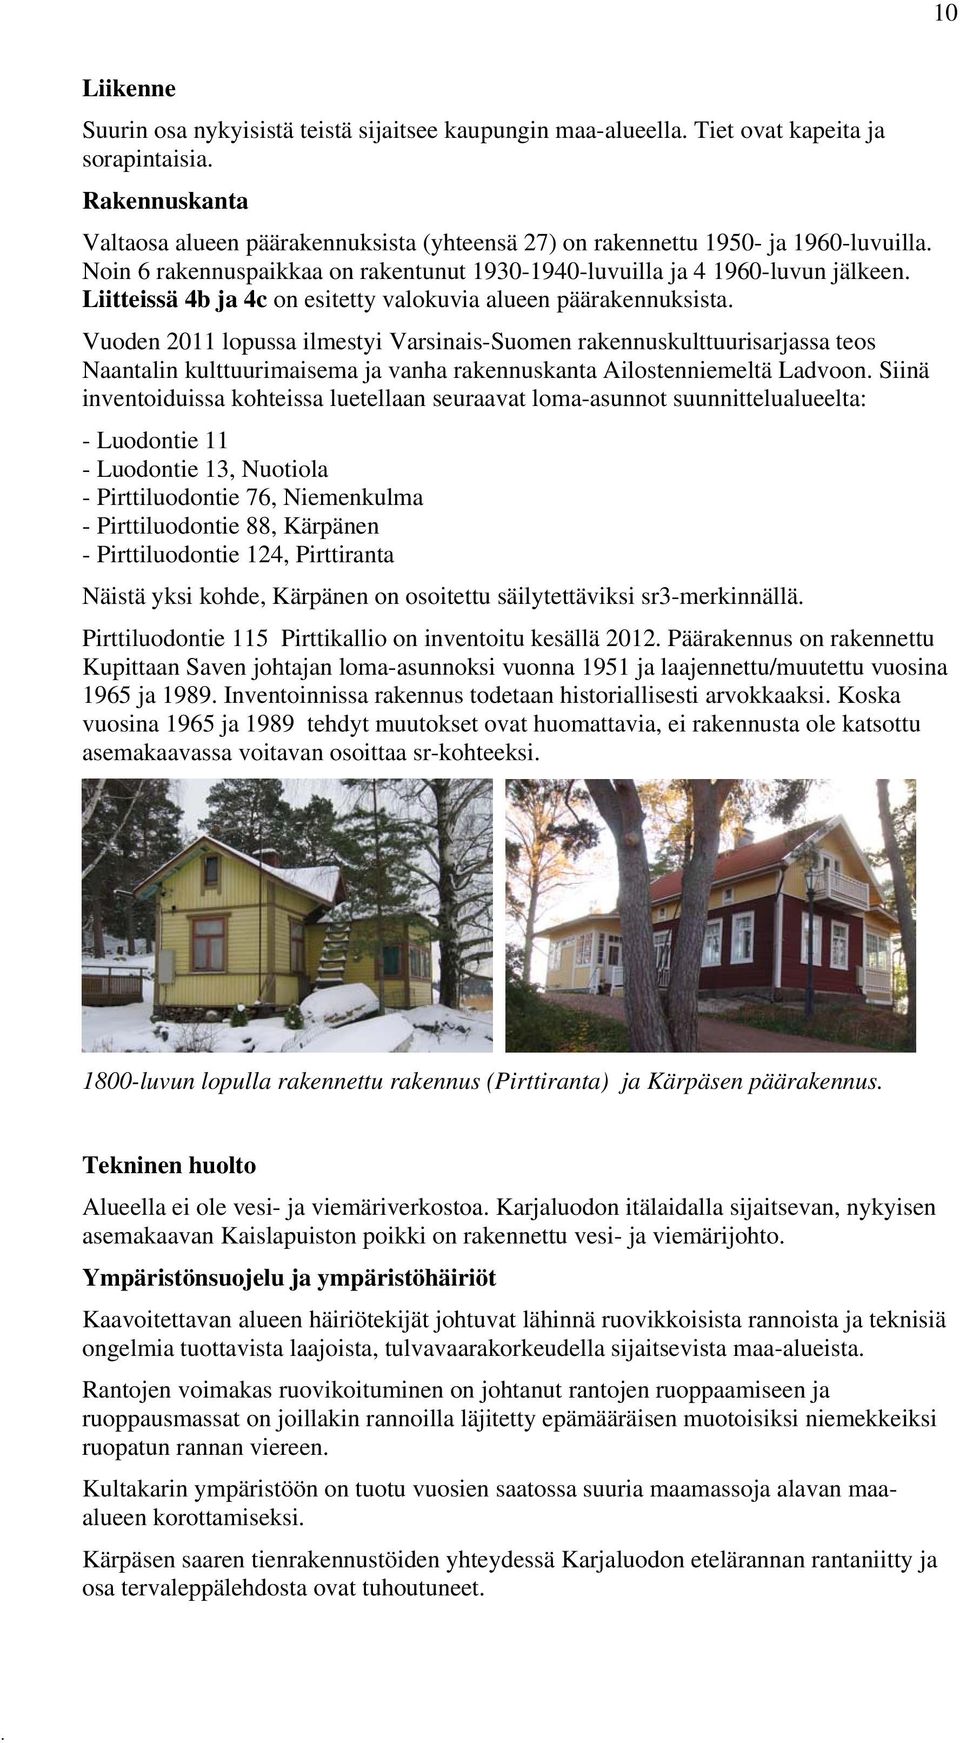 Varsinais-Suomen rakennuskulttuurisarjassa teos Naantalin kulttuurimaisema ja vanha rakennuskanta Ailostenniemeltä Ladvoon Siinä inventoiduissa kohteissa luetellaan seuraavat loma-asunnot